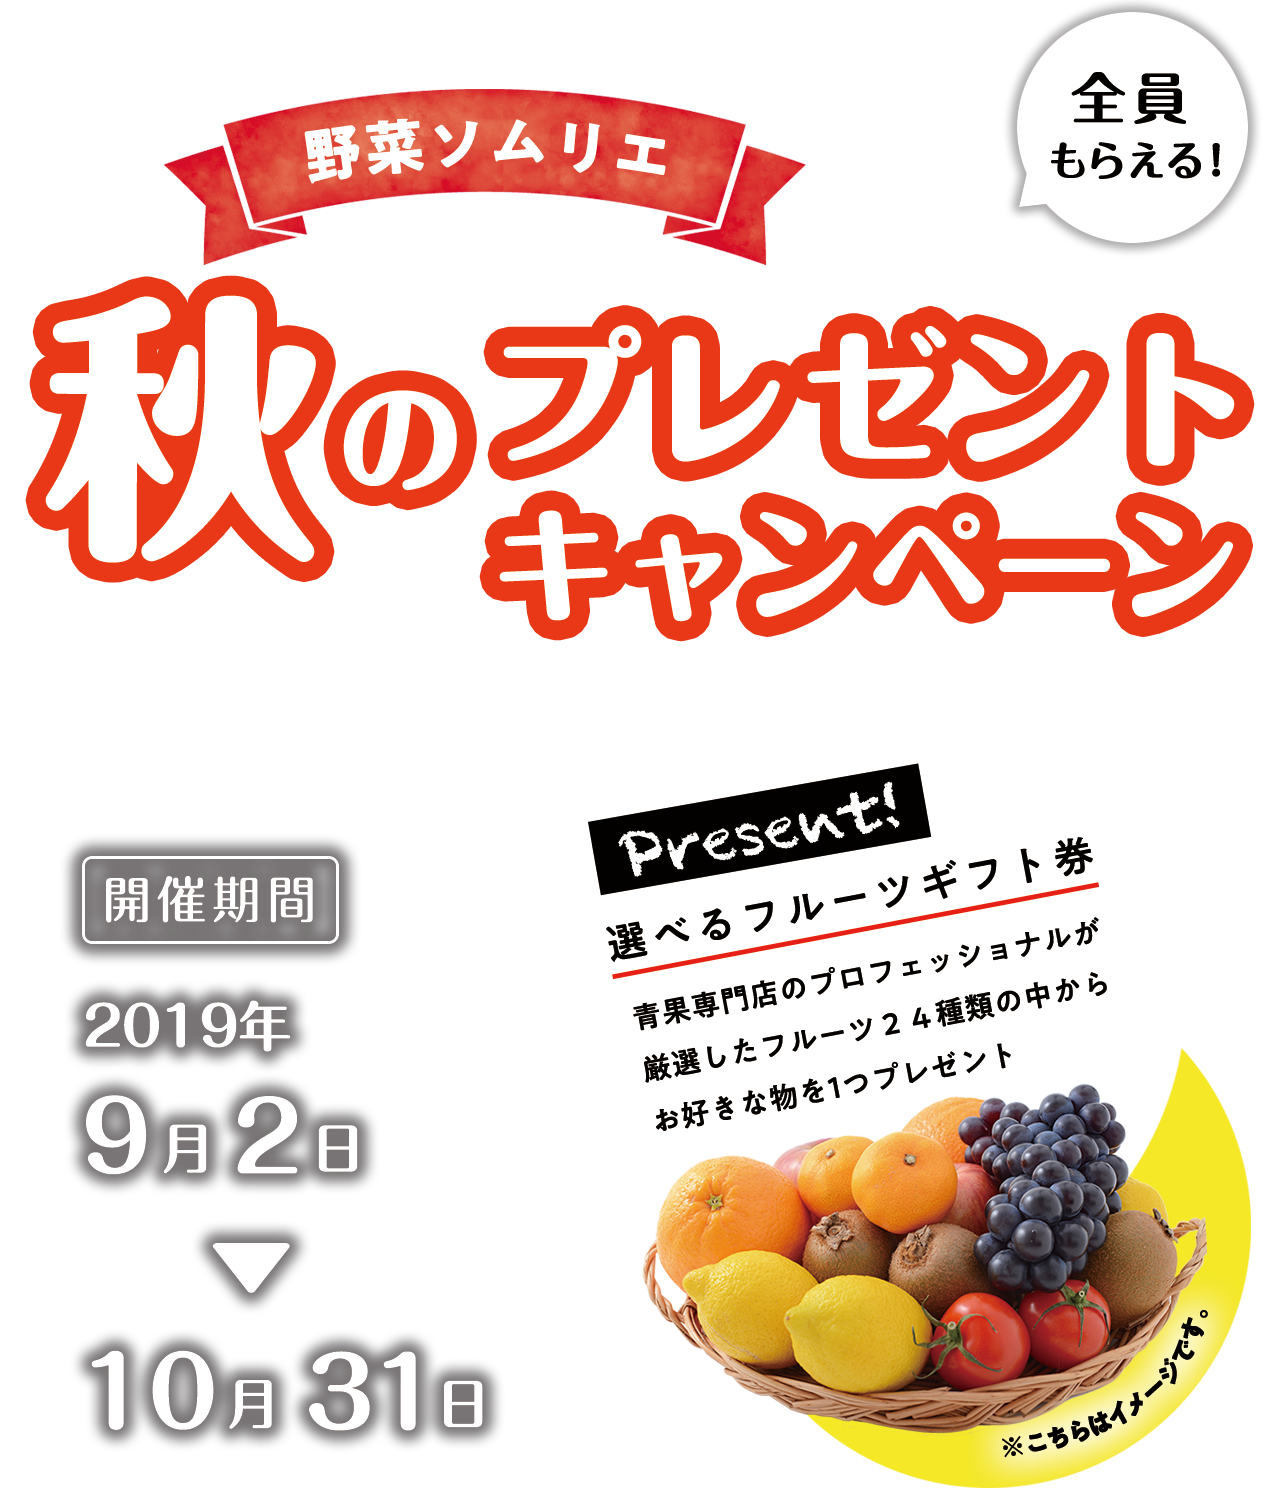 野菜ソムリエ 秋 のプレゼントキャンペーン 野菜の知識を深める資格の取得 日本野菜ソムリエ協会